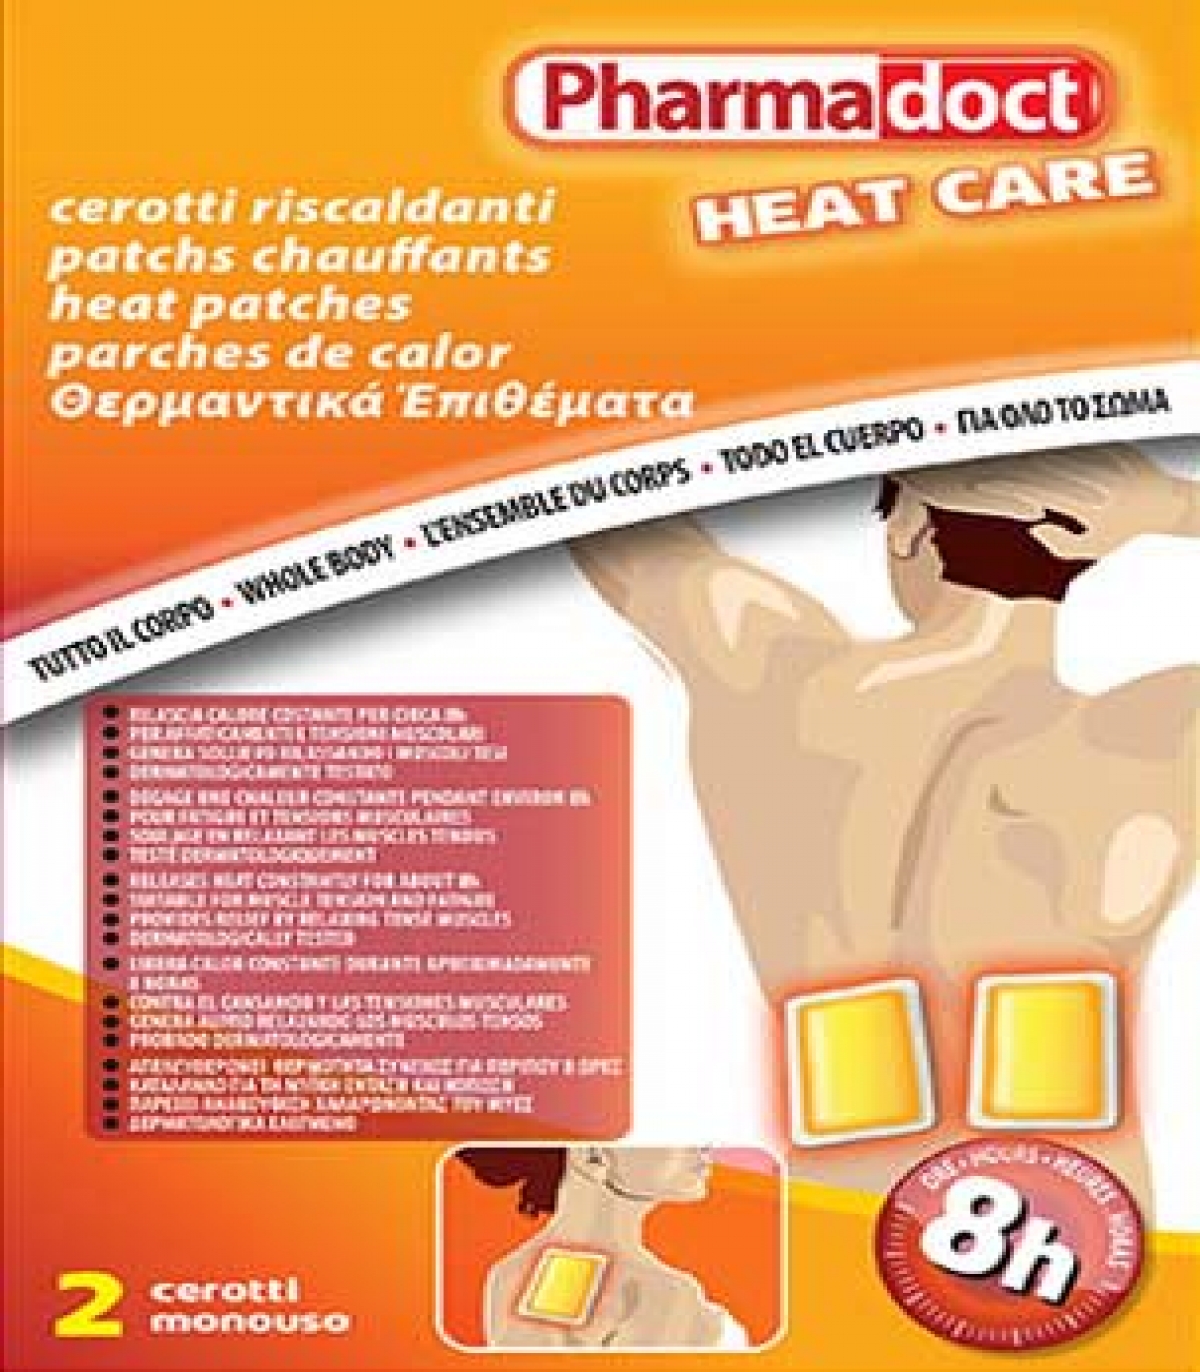 PHARMA DOCT HEAT CARE - 2 PARCHES DE CALOR MONOUSO - LIBERACIÓN DE